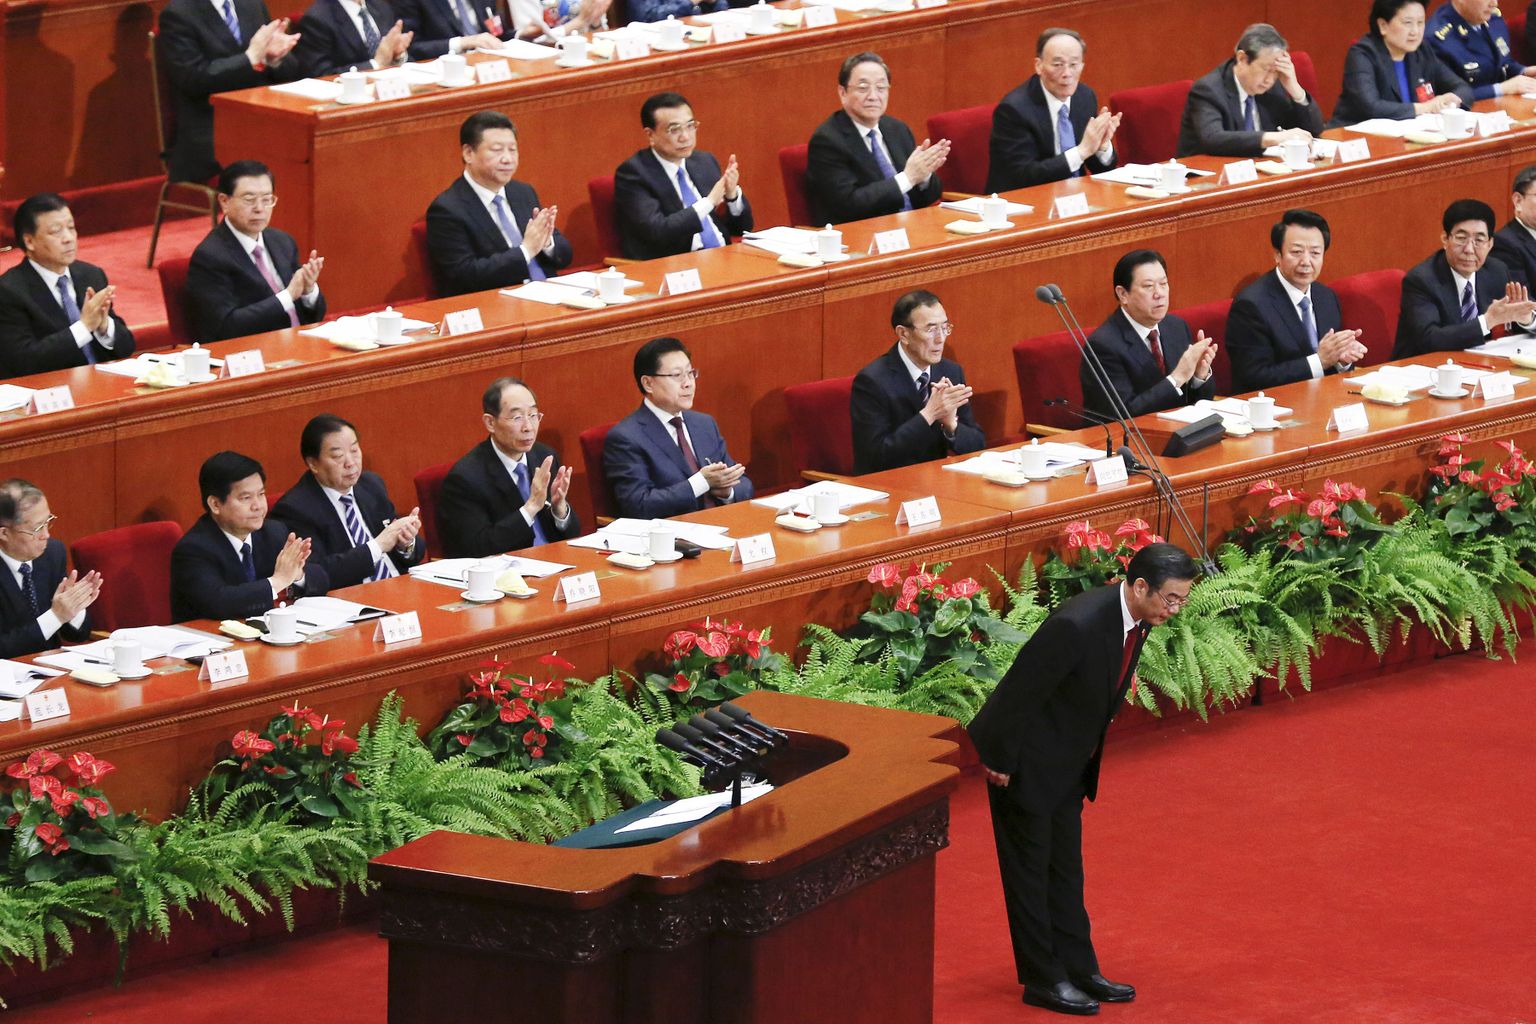 Hiina ülemkohtu esimees Zhou Qiang kummardamas Hiina parteikongressil möödunud aasta märtsis Pekingis.